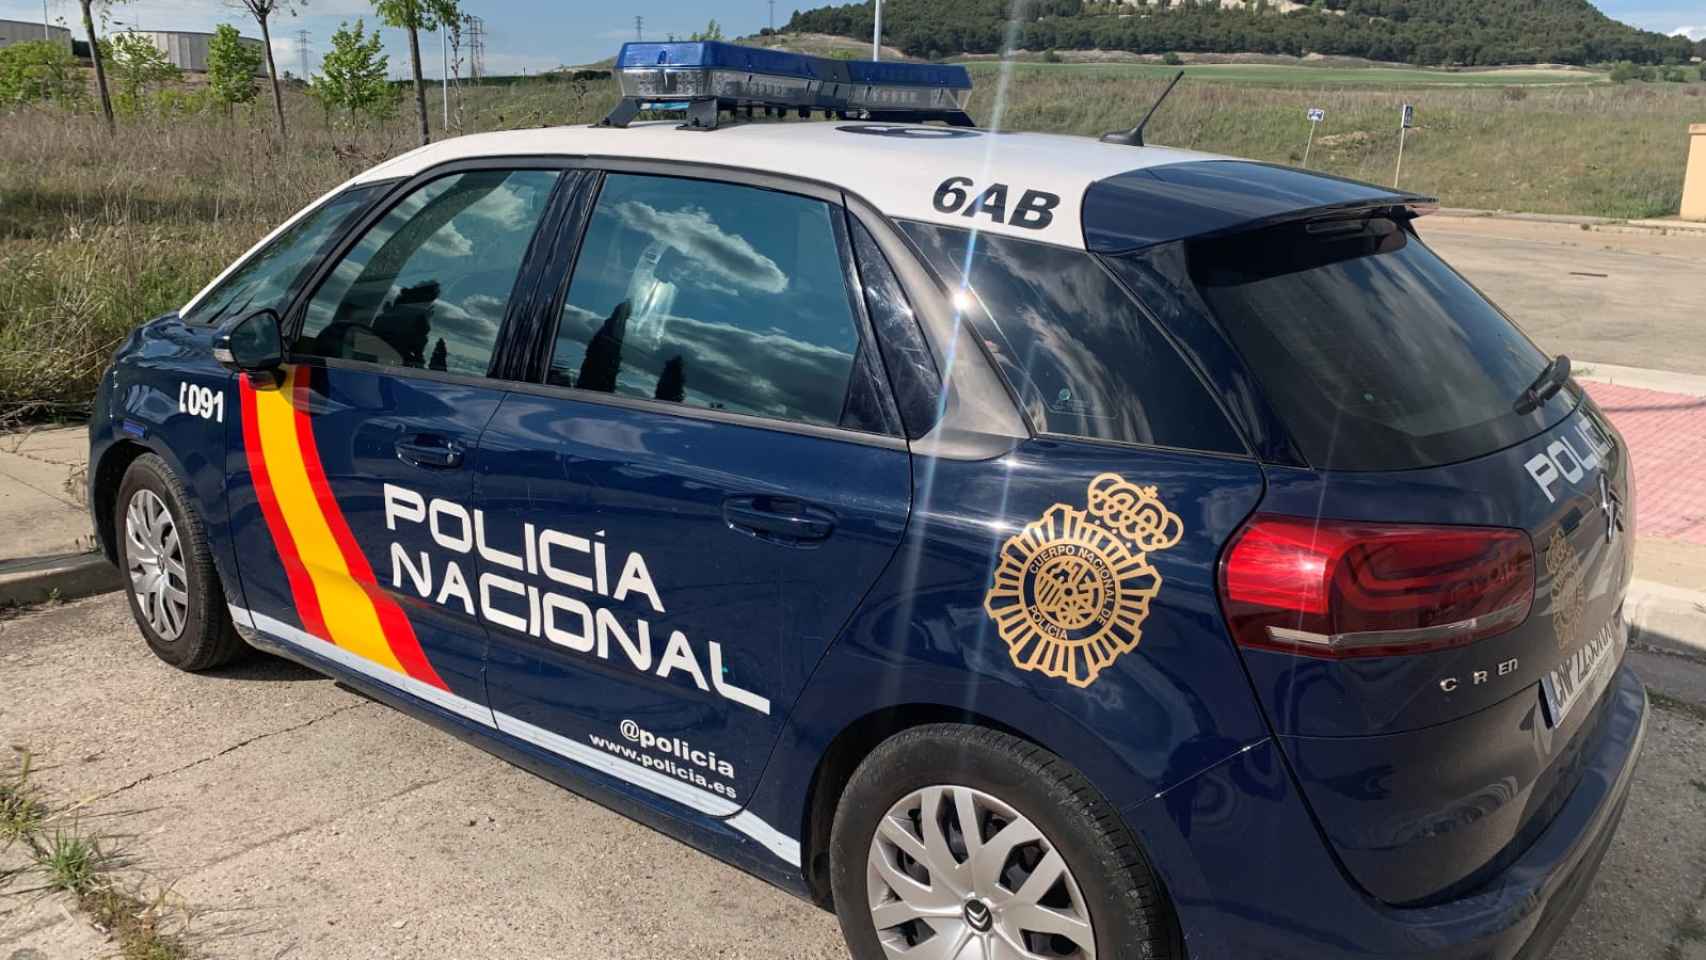 La Policía Nacional detiene al agresor en el barrio de las Delicias